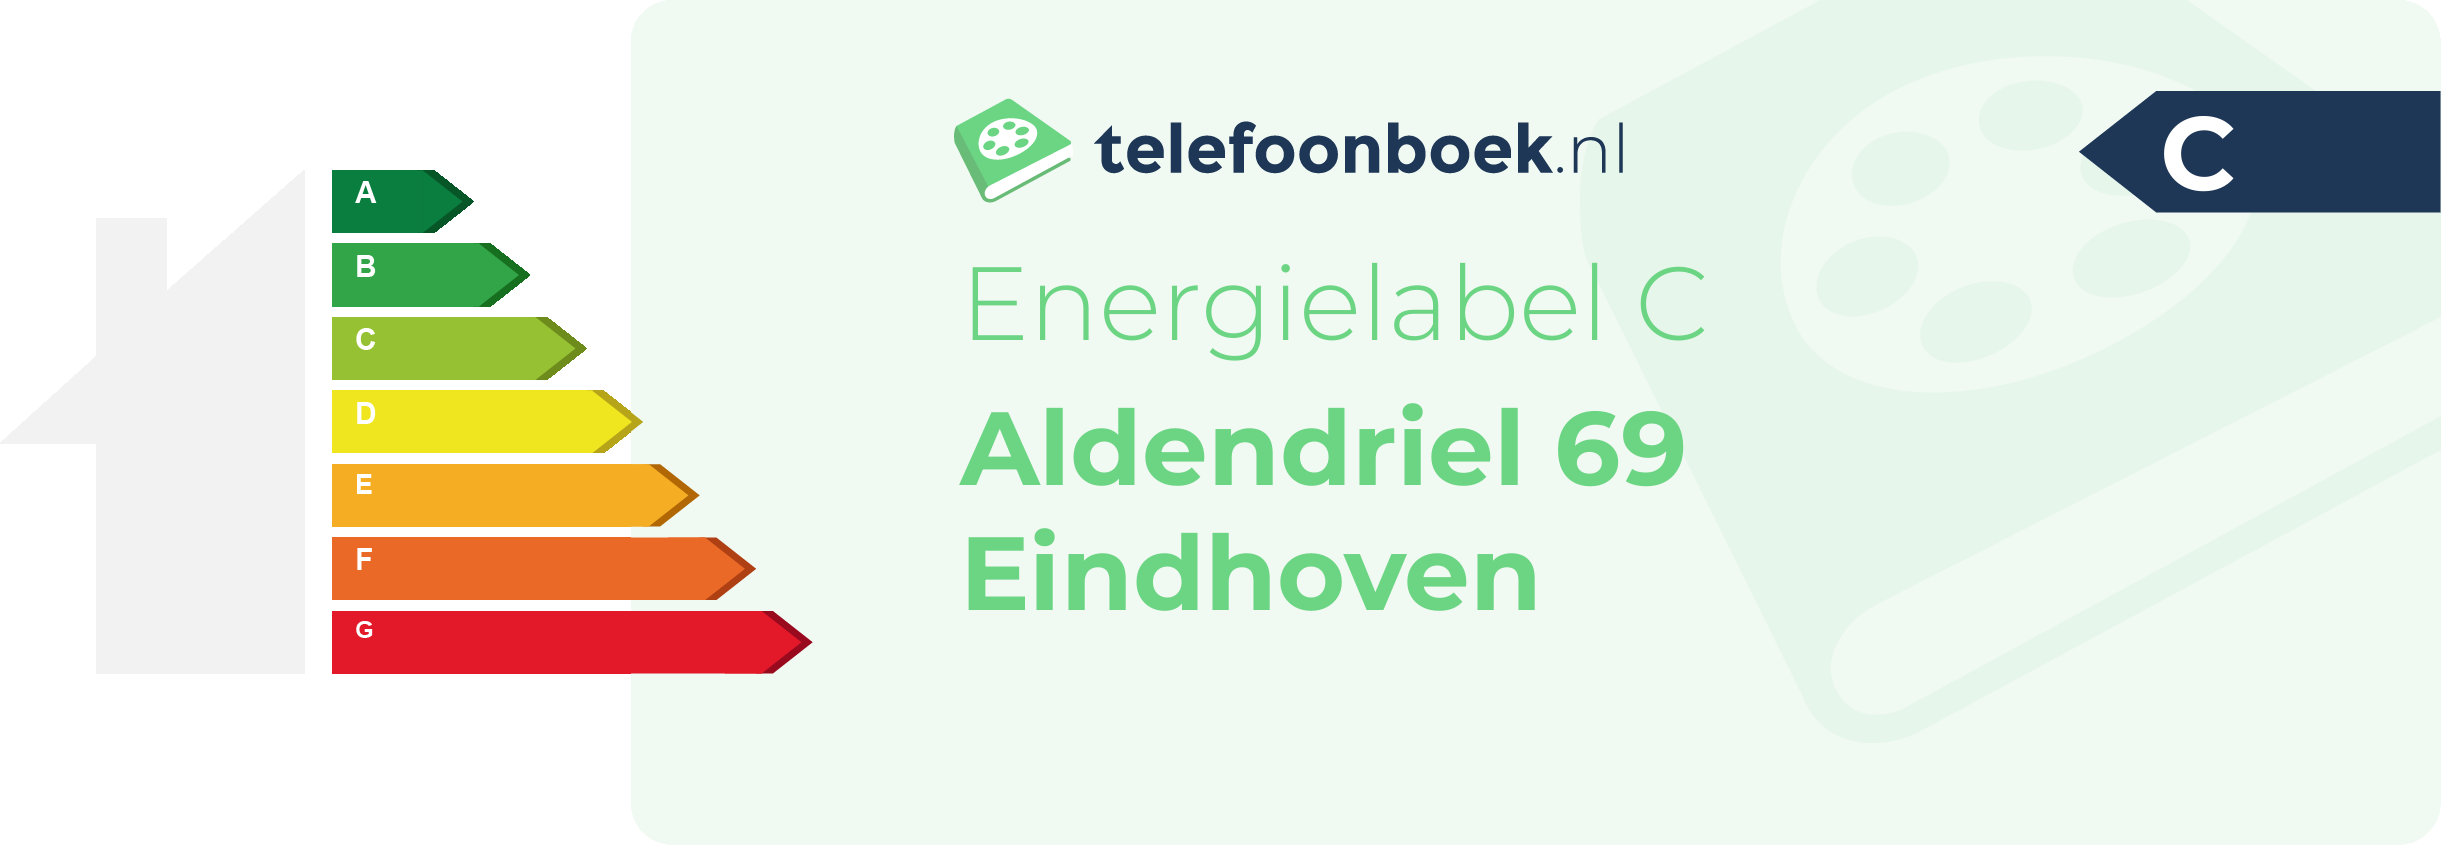 Energielabel Aldendriel 69 Eindhoven